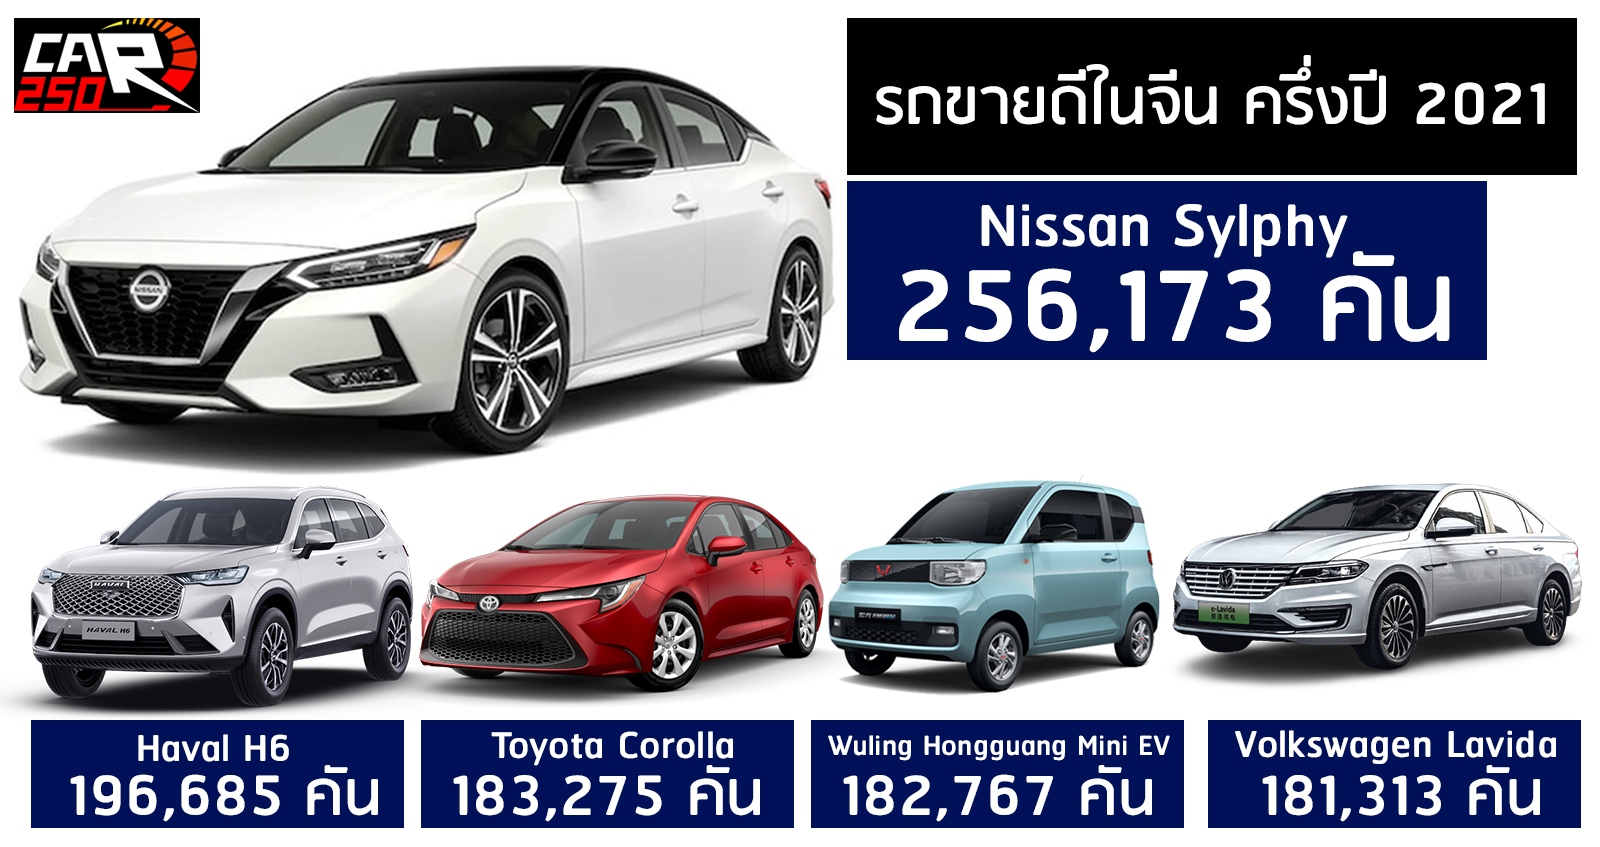 Nissan Sylphy คือรถยนต์ขายดีสุดในจีน ครึ่งแรกปี 2021